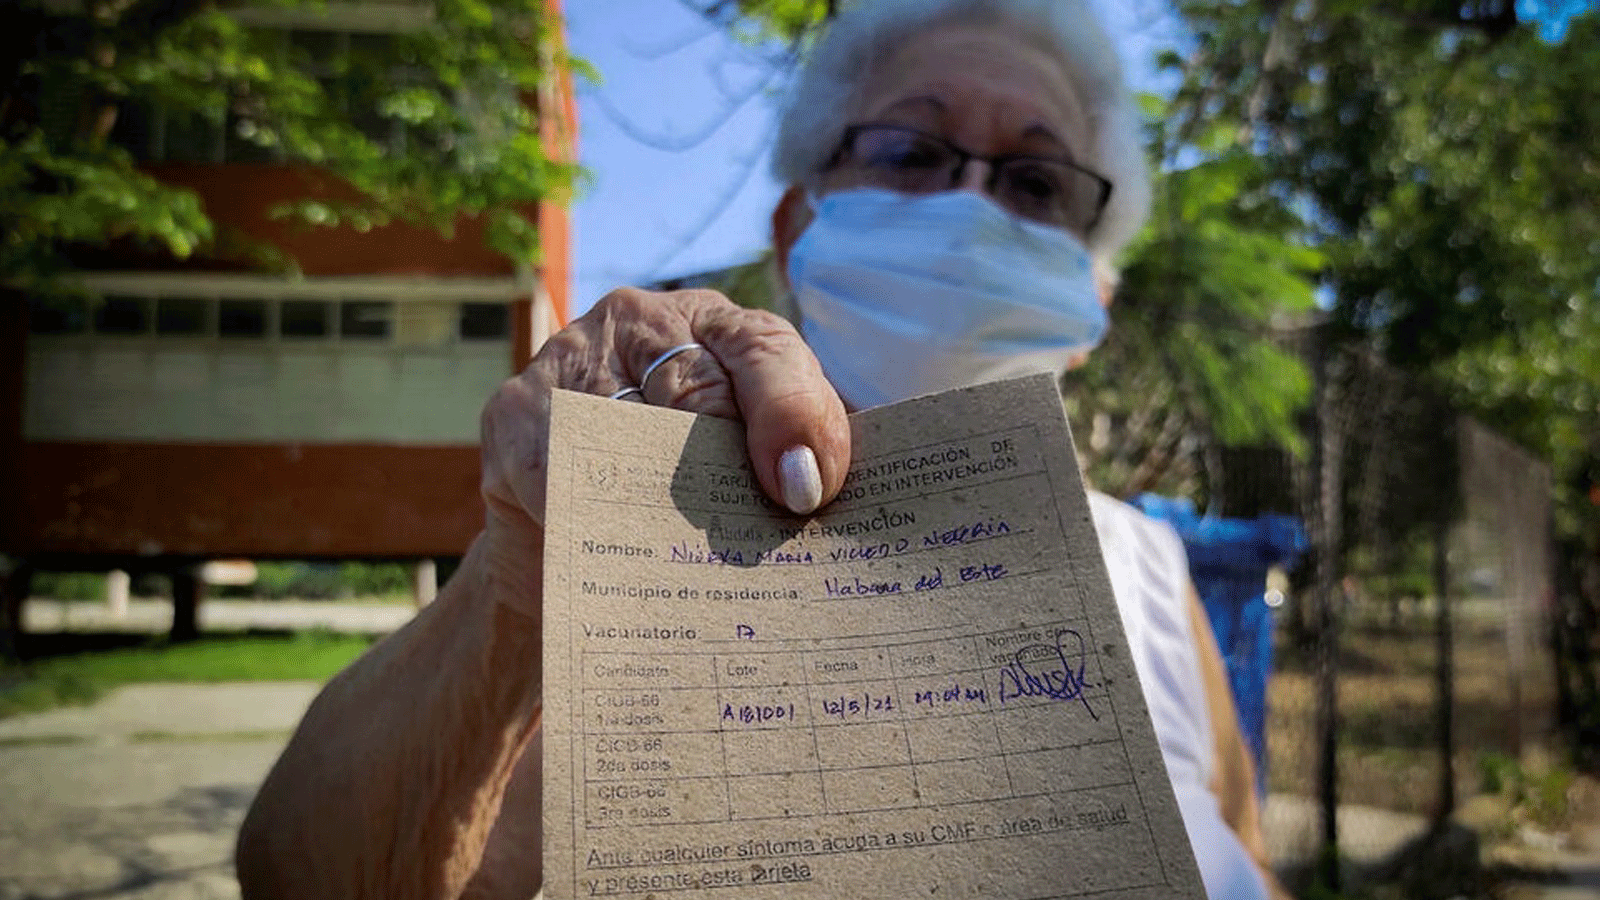 امرأة مسنة تعرض بطاقة التطعيم الخاصة بها بعد تلقي الجرعة الأولى من اللقاح الكوبي المرشح ضد Covid-19 في هافانا، 12 أيار/ مايو 2021.